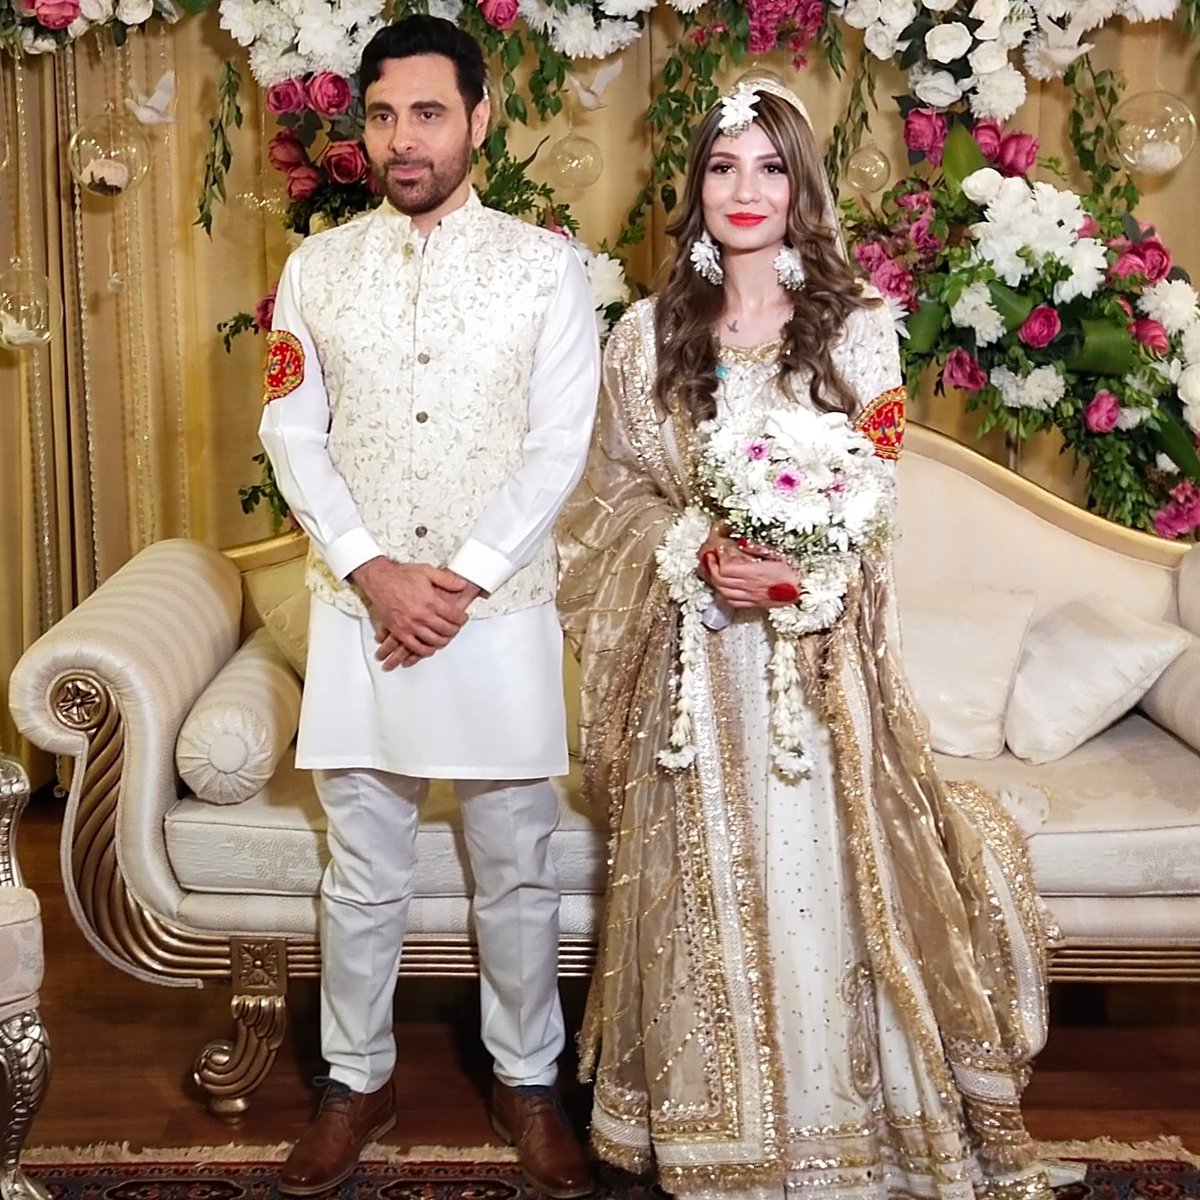 #ٹوئکر
معروف پاکستانی گلوکار ہارون بھی رشتہ ازدواج میں بندھ گئے۔ انہوں نے فروا سے اسلام آباد میں نکاح کی تصویر سوشل میڈیا پر شیئر کی ہے۔
@TheRealHaroon